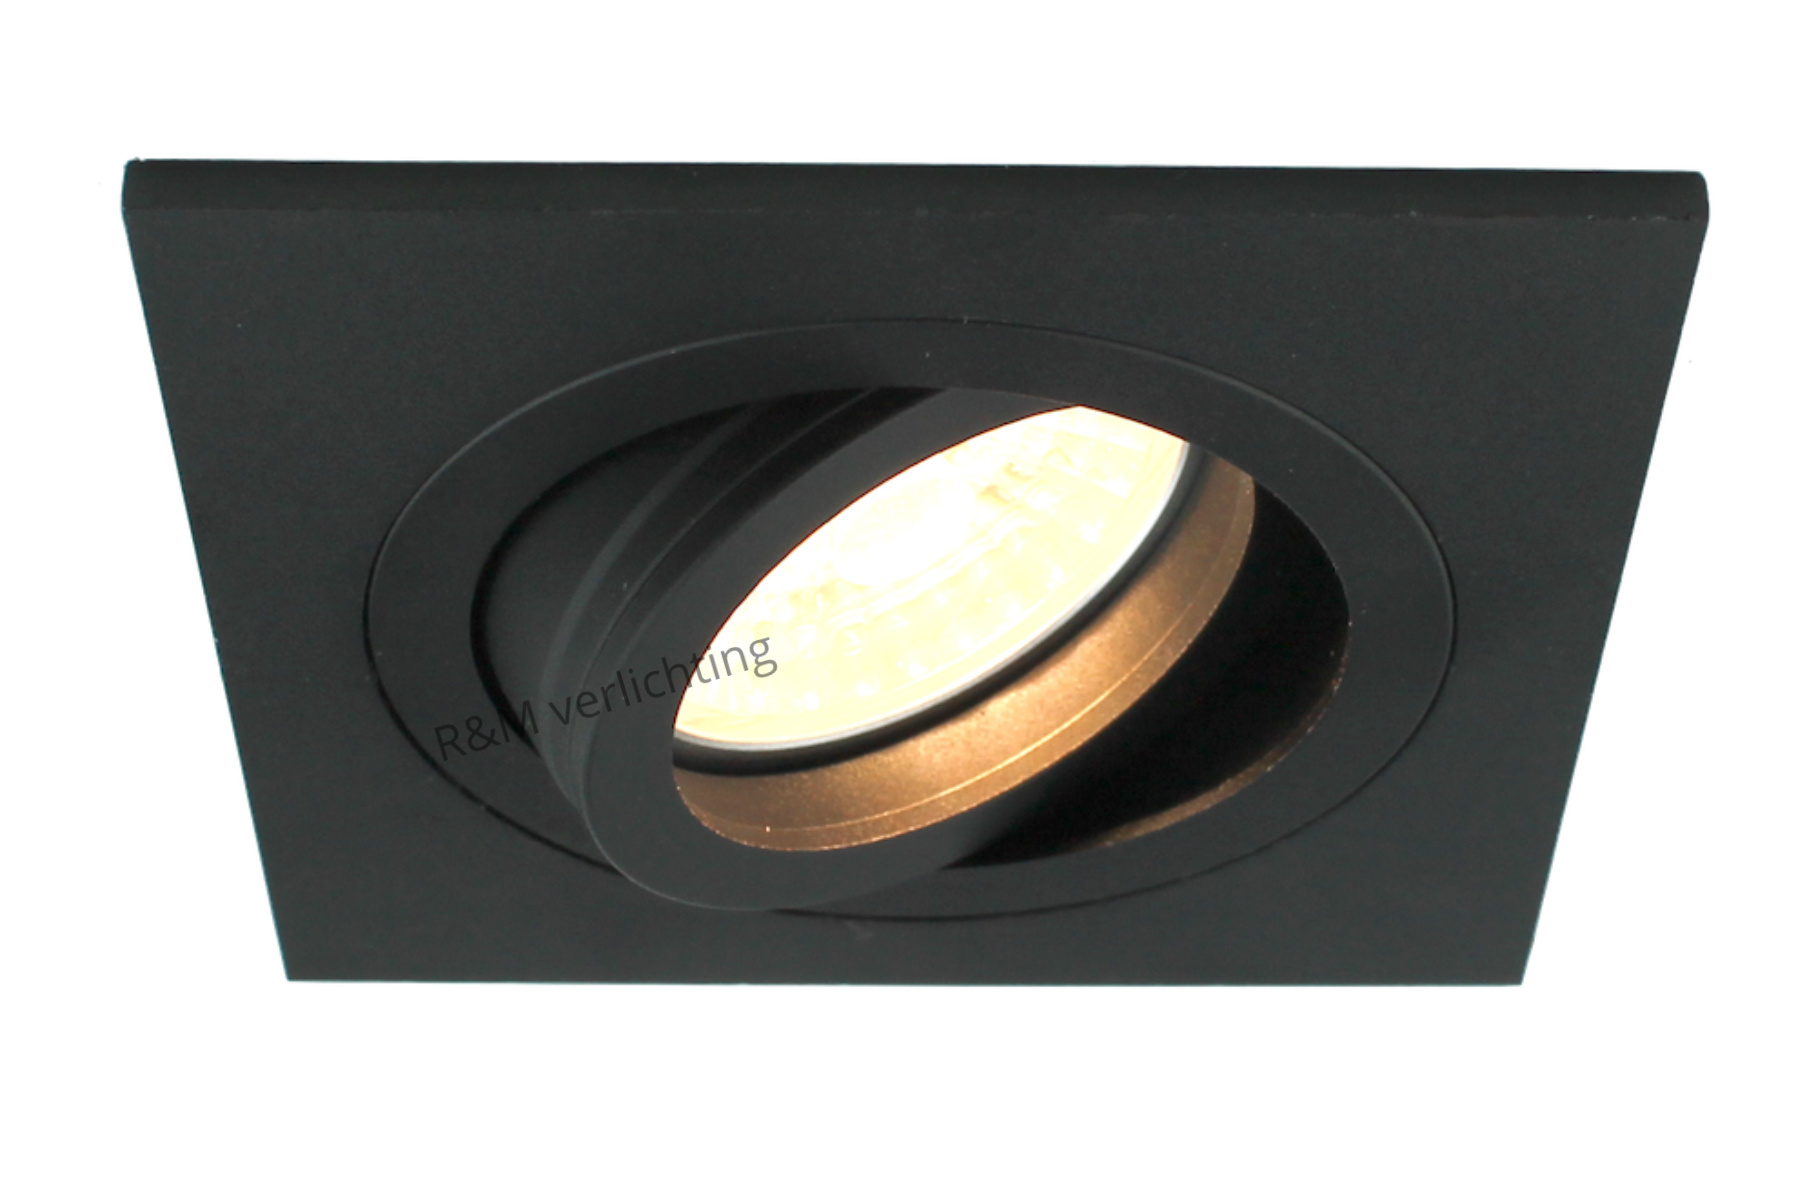 rijk Zeug september Vierkante inbouwspot zwart voor GU10 LED lamp dimbaar - R&M Verlichting